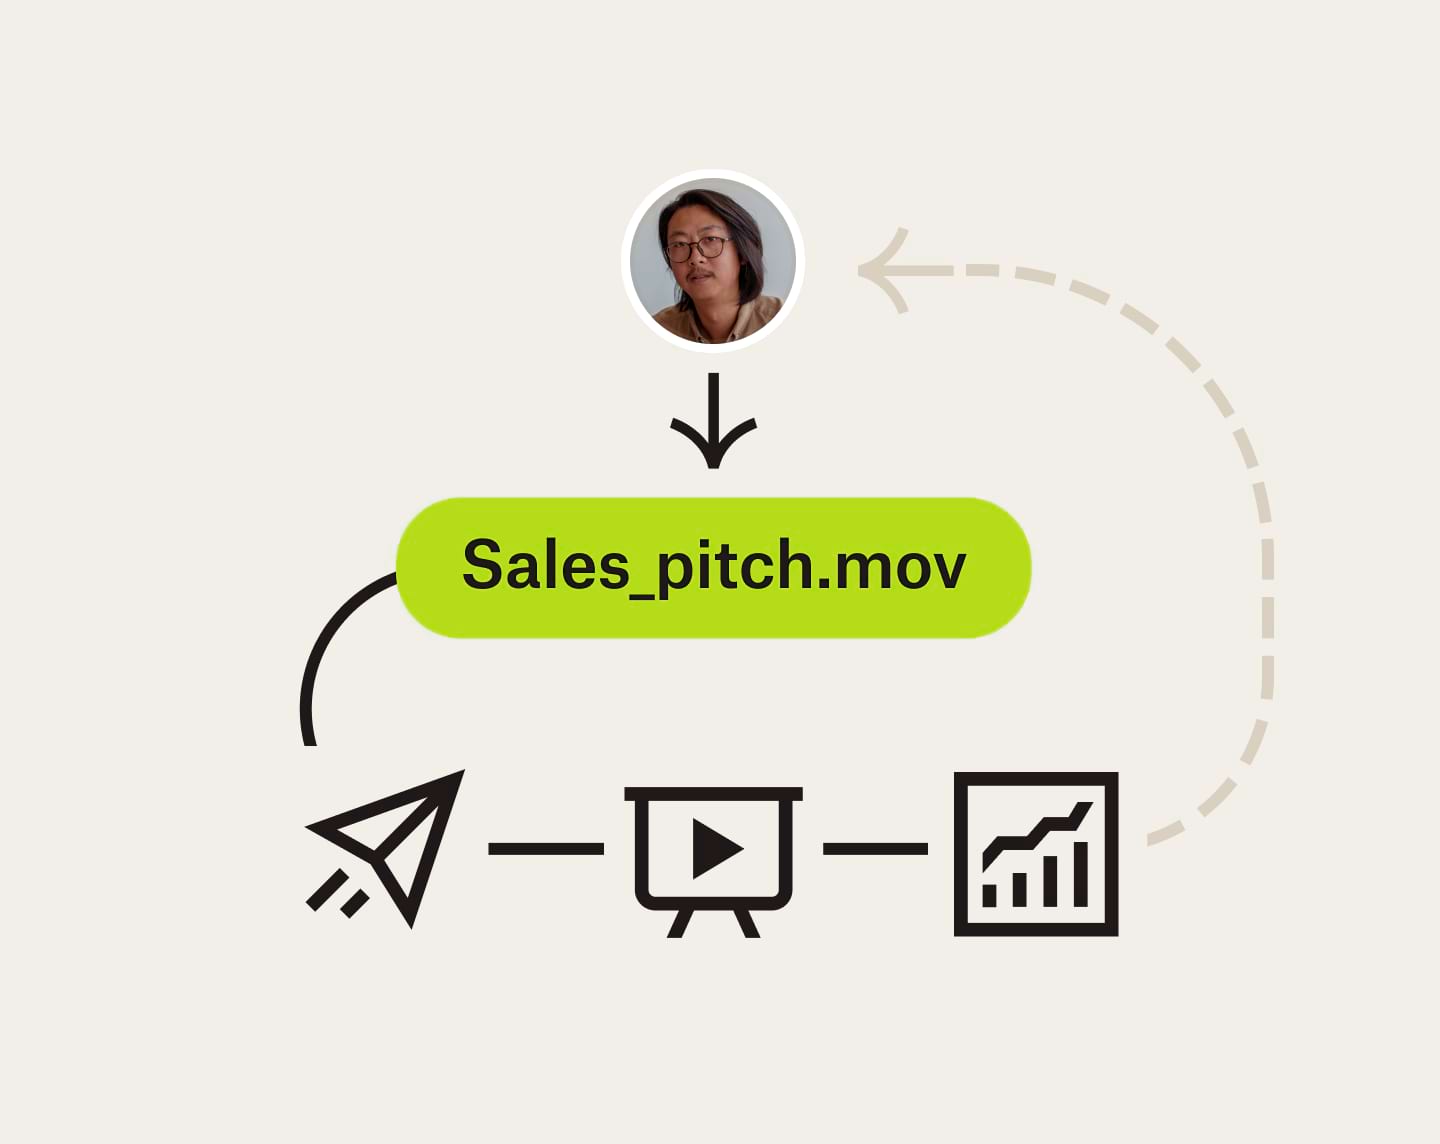 Un diagramma di flusso mostra come inviare e visualizzare un video di presentazione finalizzato alla vendita e come questo possa contribuire alla crescita dell'azienda.